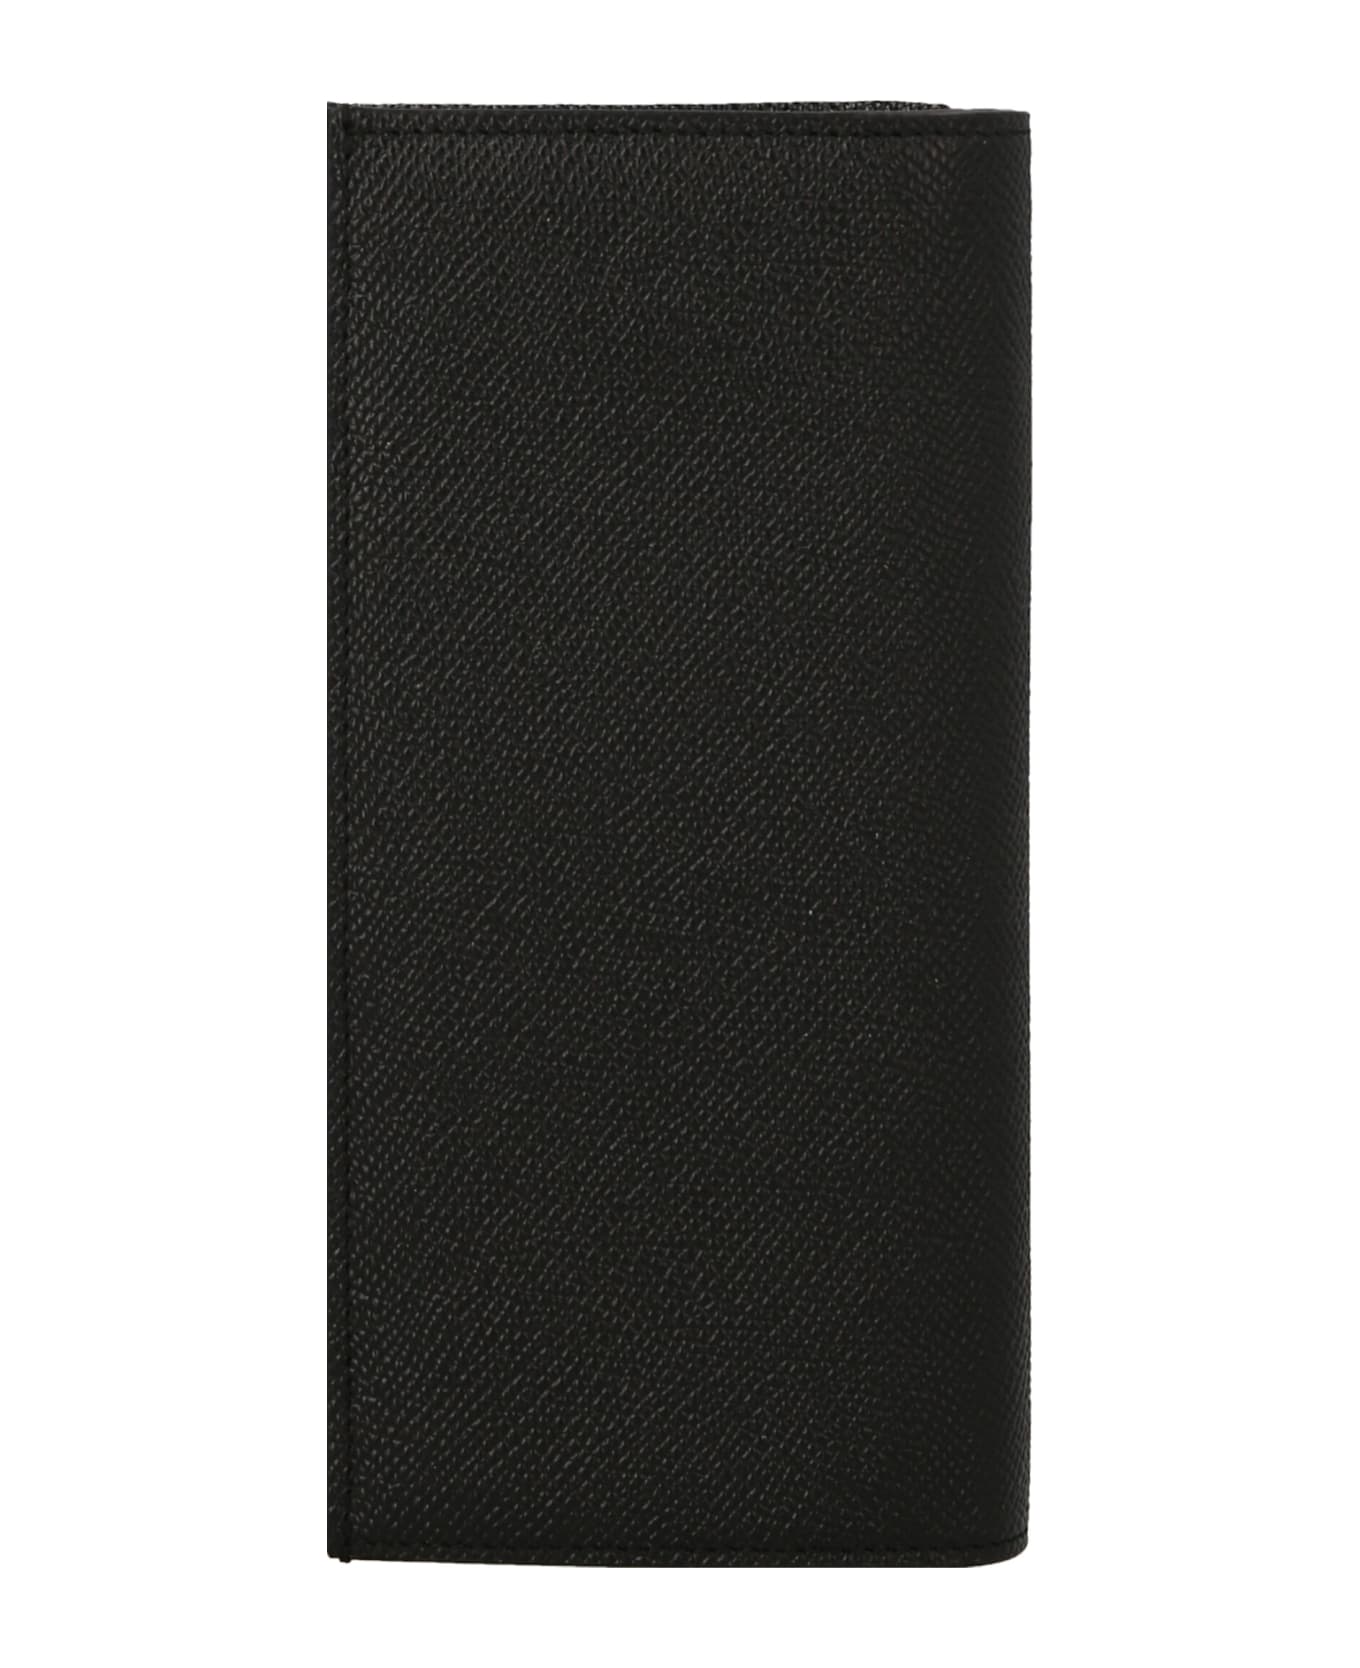 Dolce & Gabbana Vertical Wallet - NERO